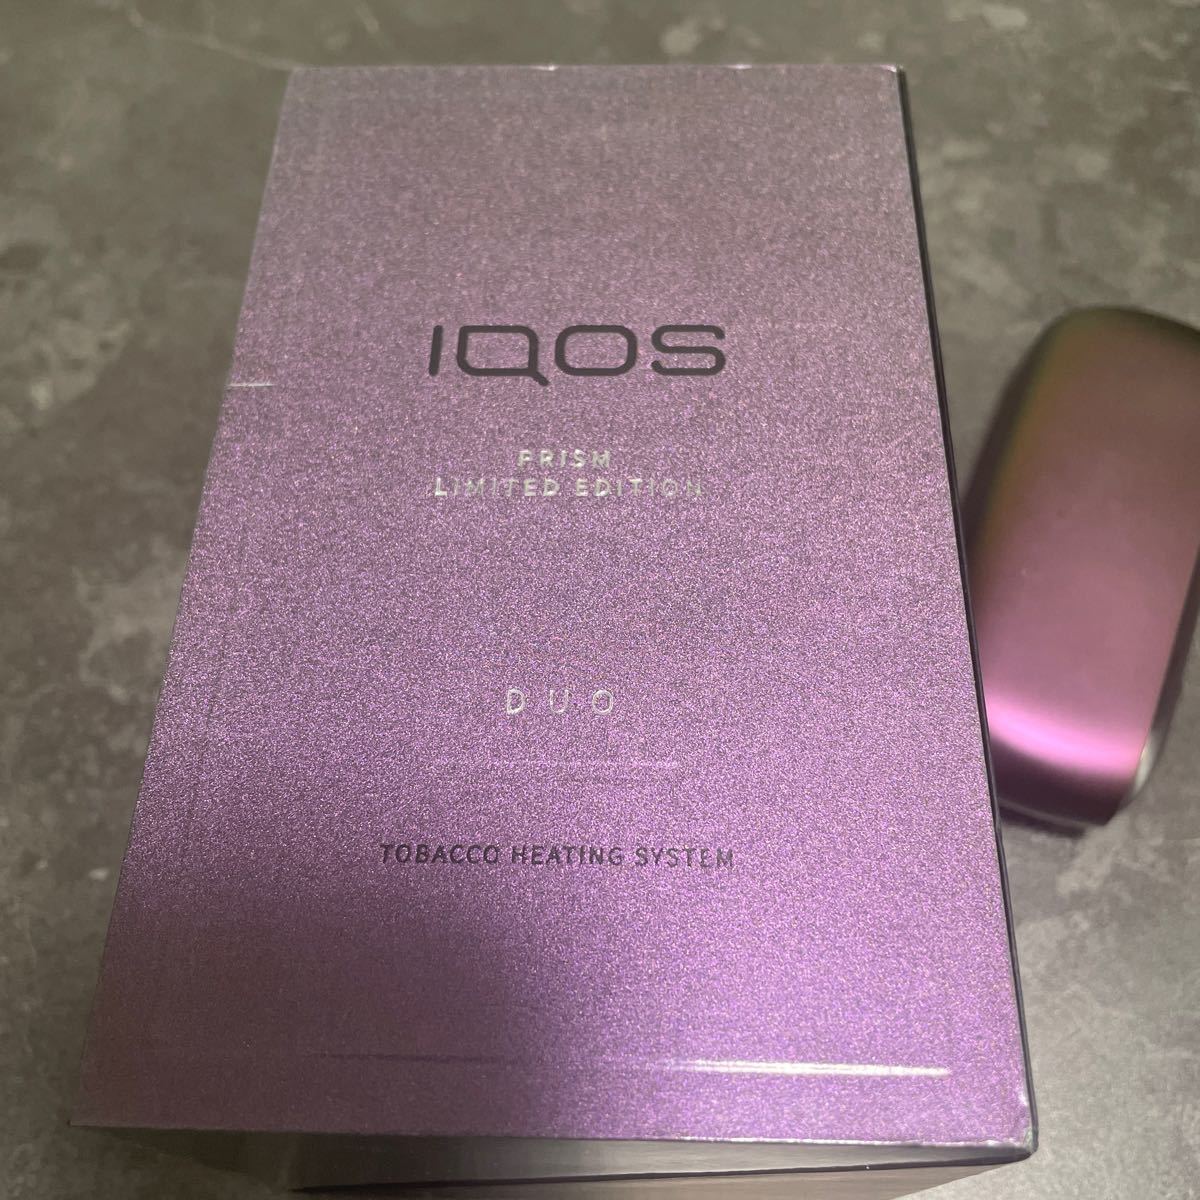 アイコス 3 DUO キット “プリズム”モデル IQOS 限定カラー パープル